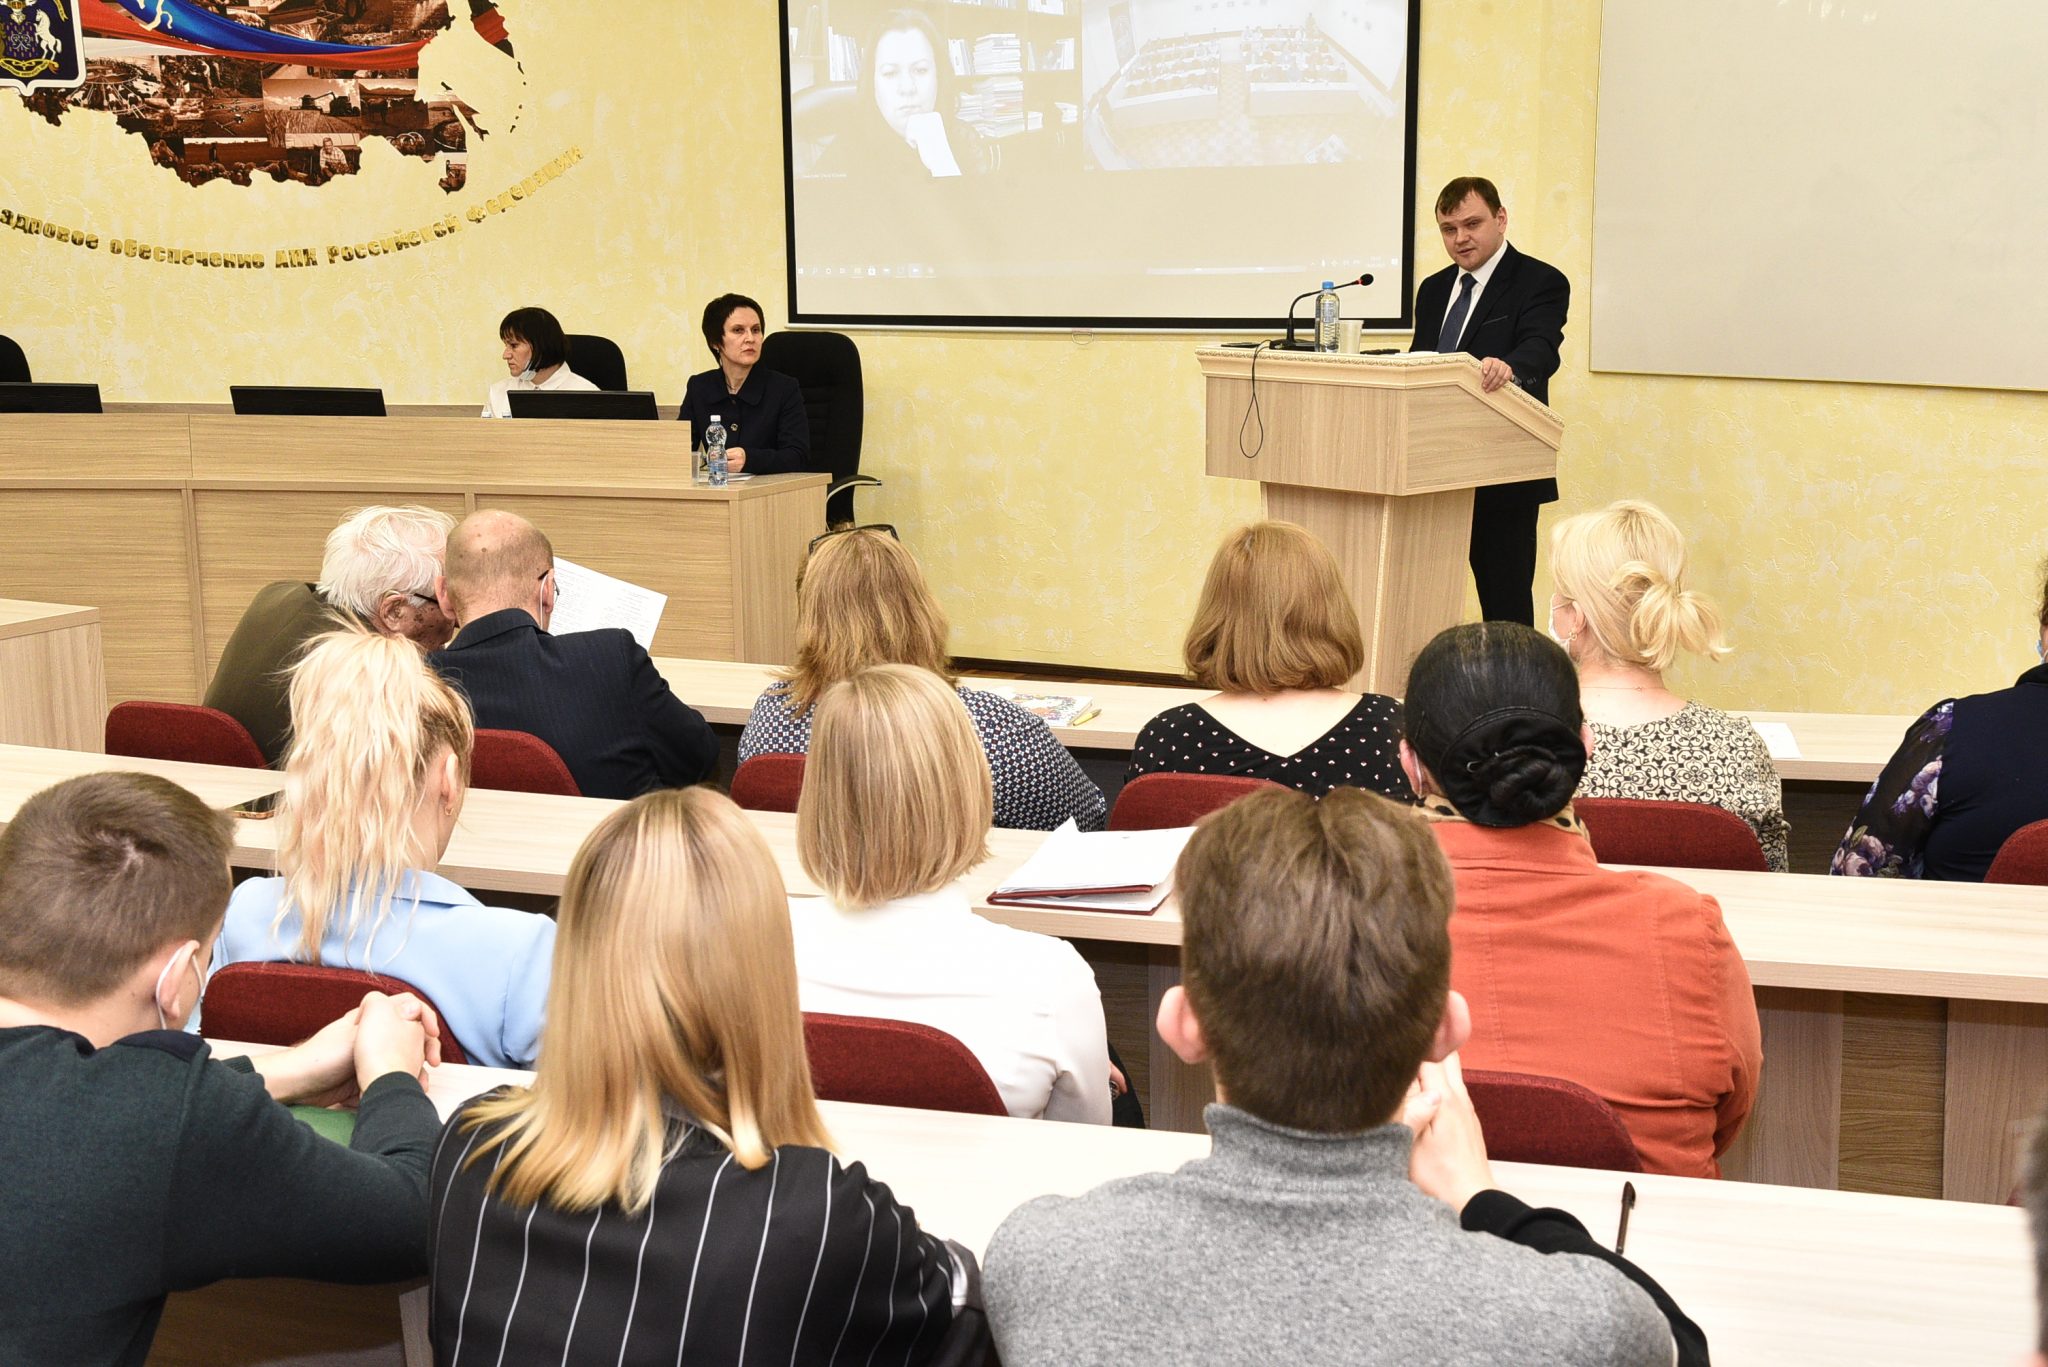 ВГПГК Воронеж научно практические конференции 2014 год.